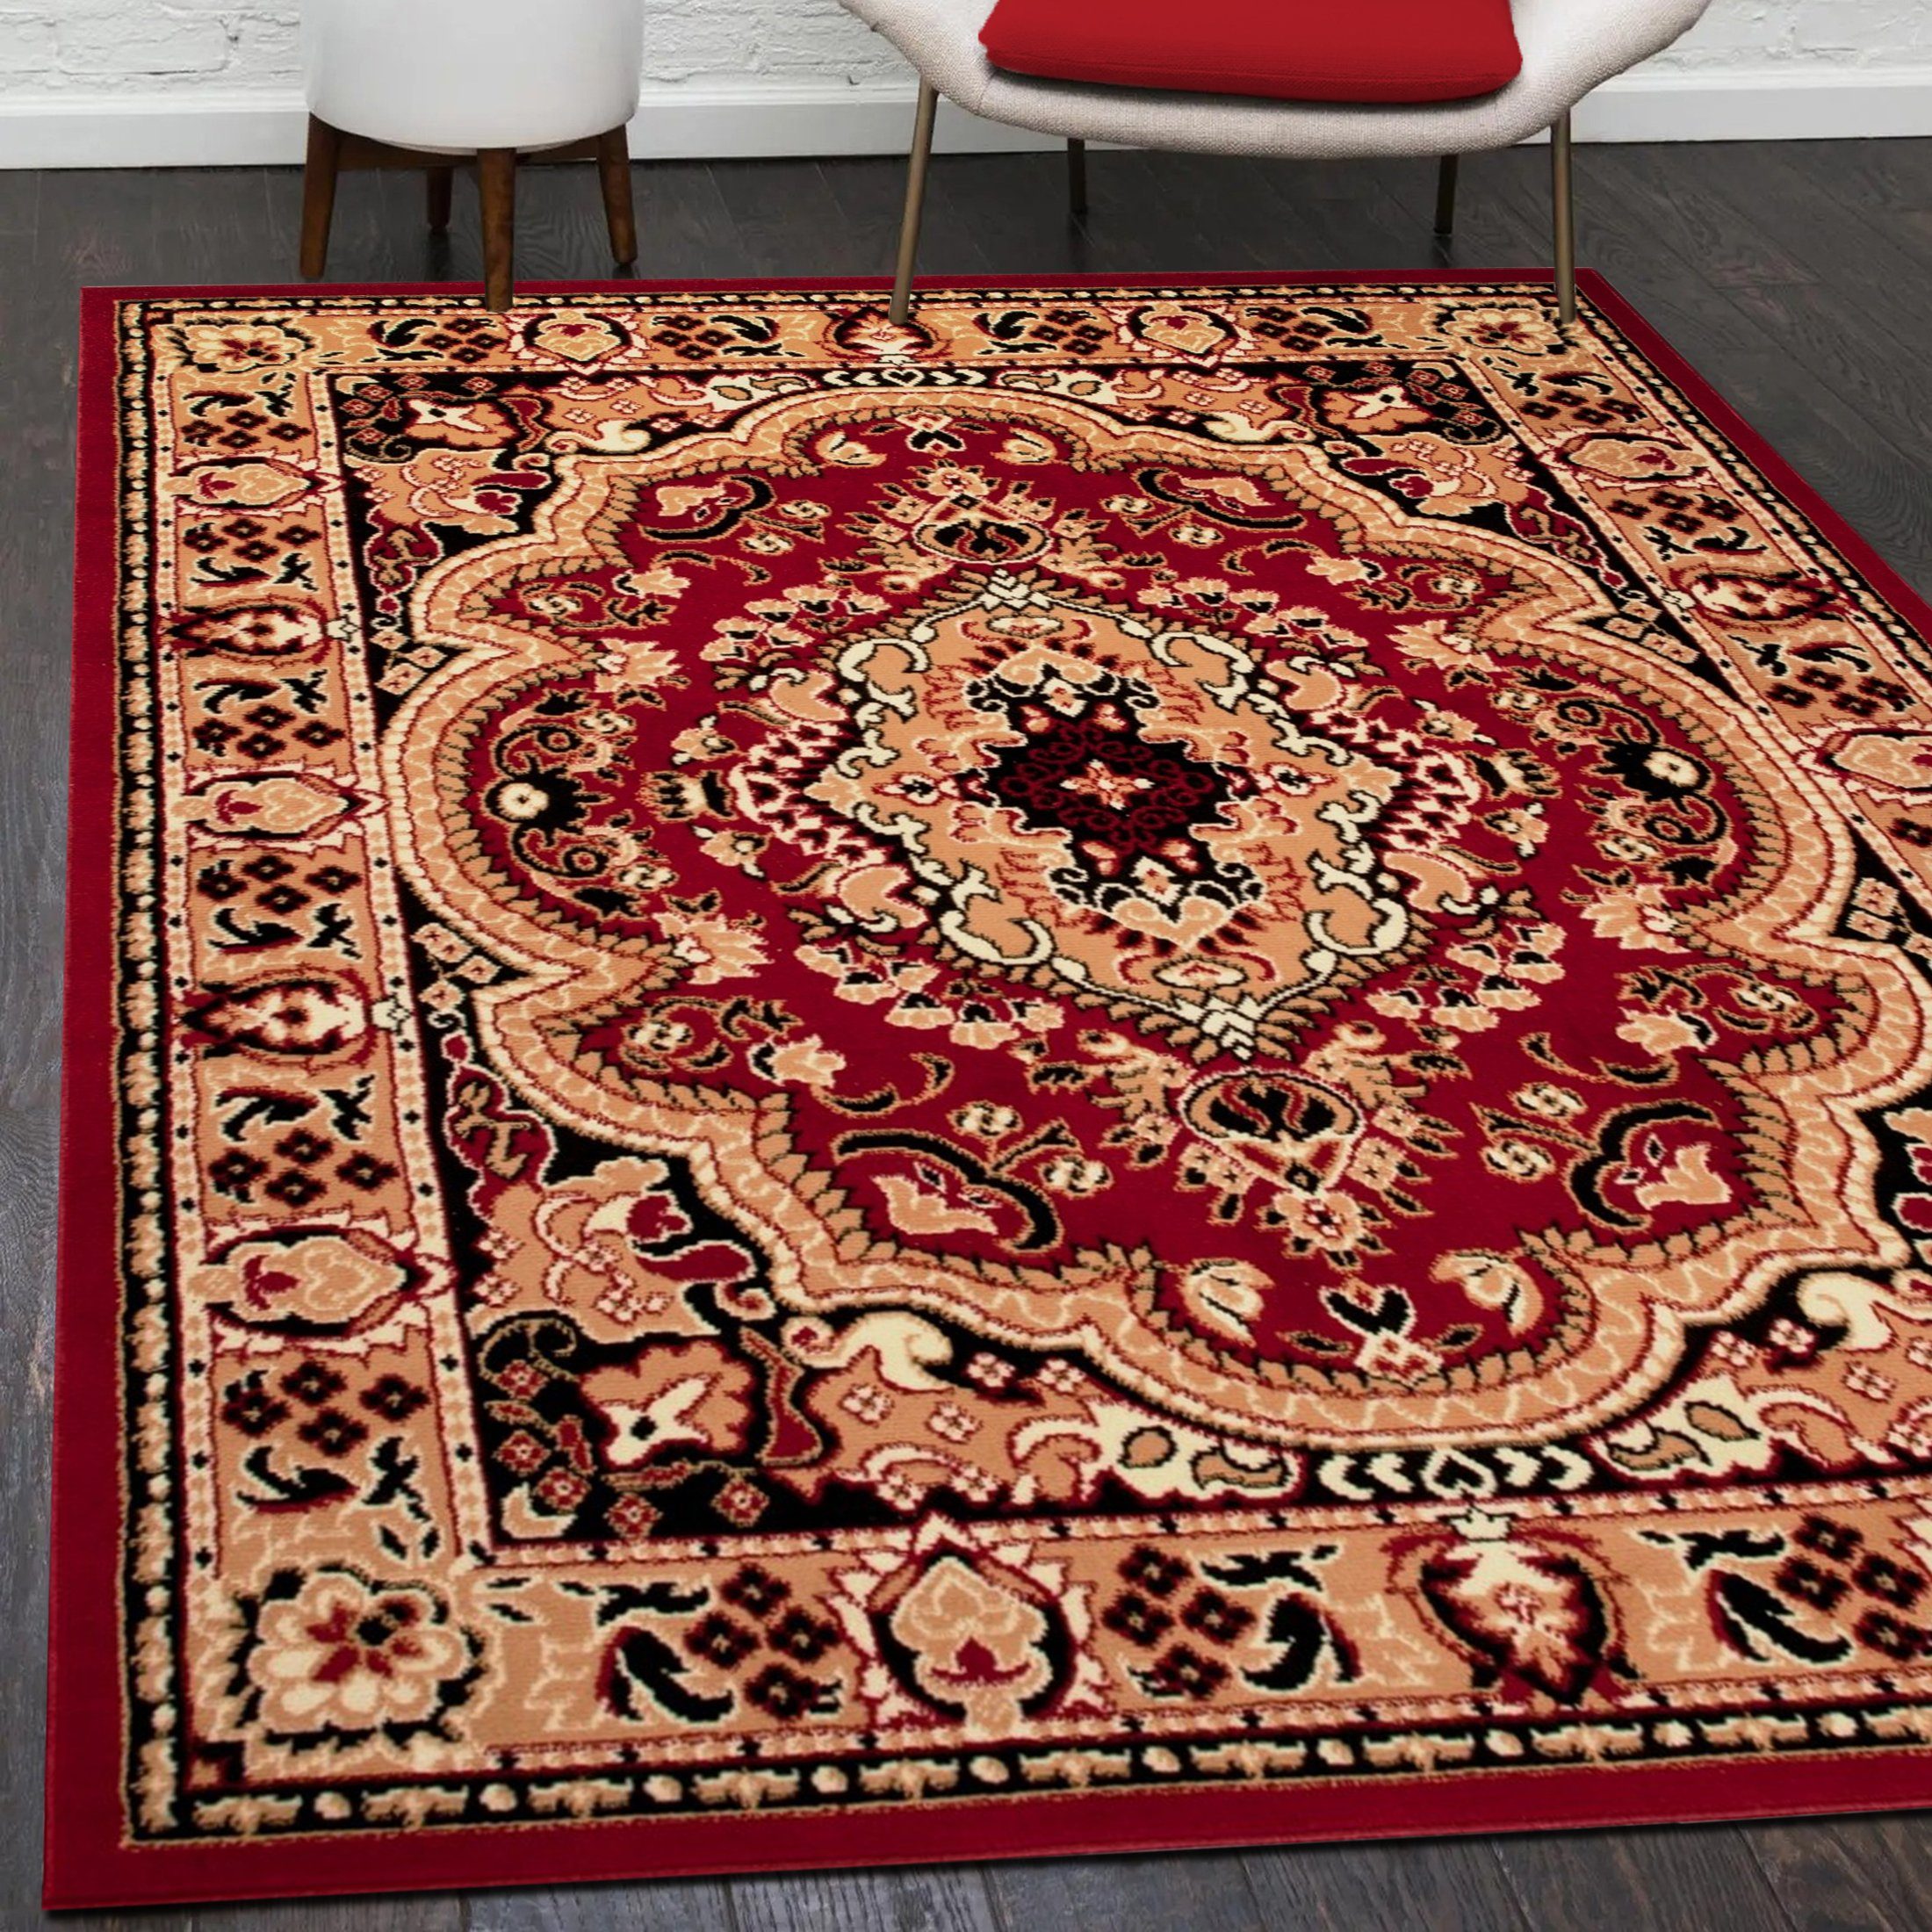 Orientteppich Orientalisch Vintage Teppich Kurzflor Wohnzimmerteppich Rot, Mazovia, 200 x 300 cm, Fußbodenheizung, Allergiker geeignet, Farbecht, Pflegeleicht